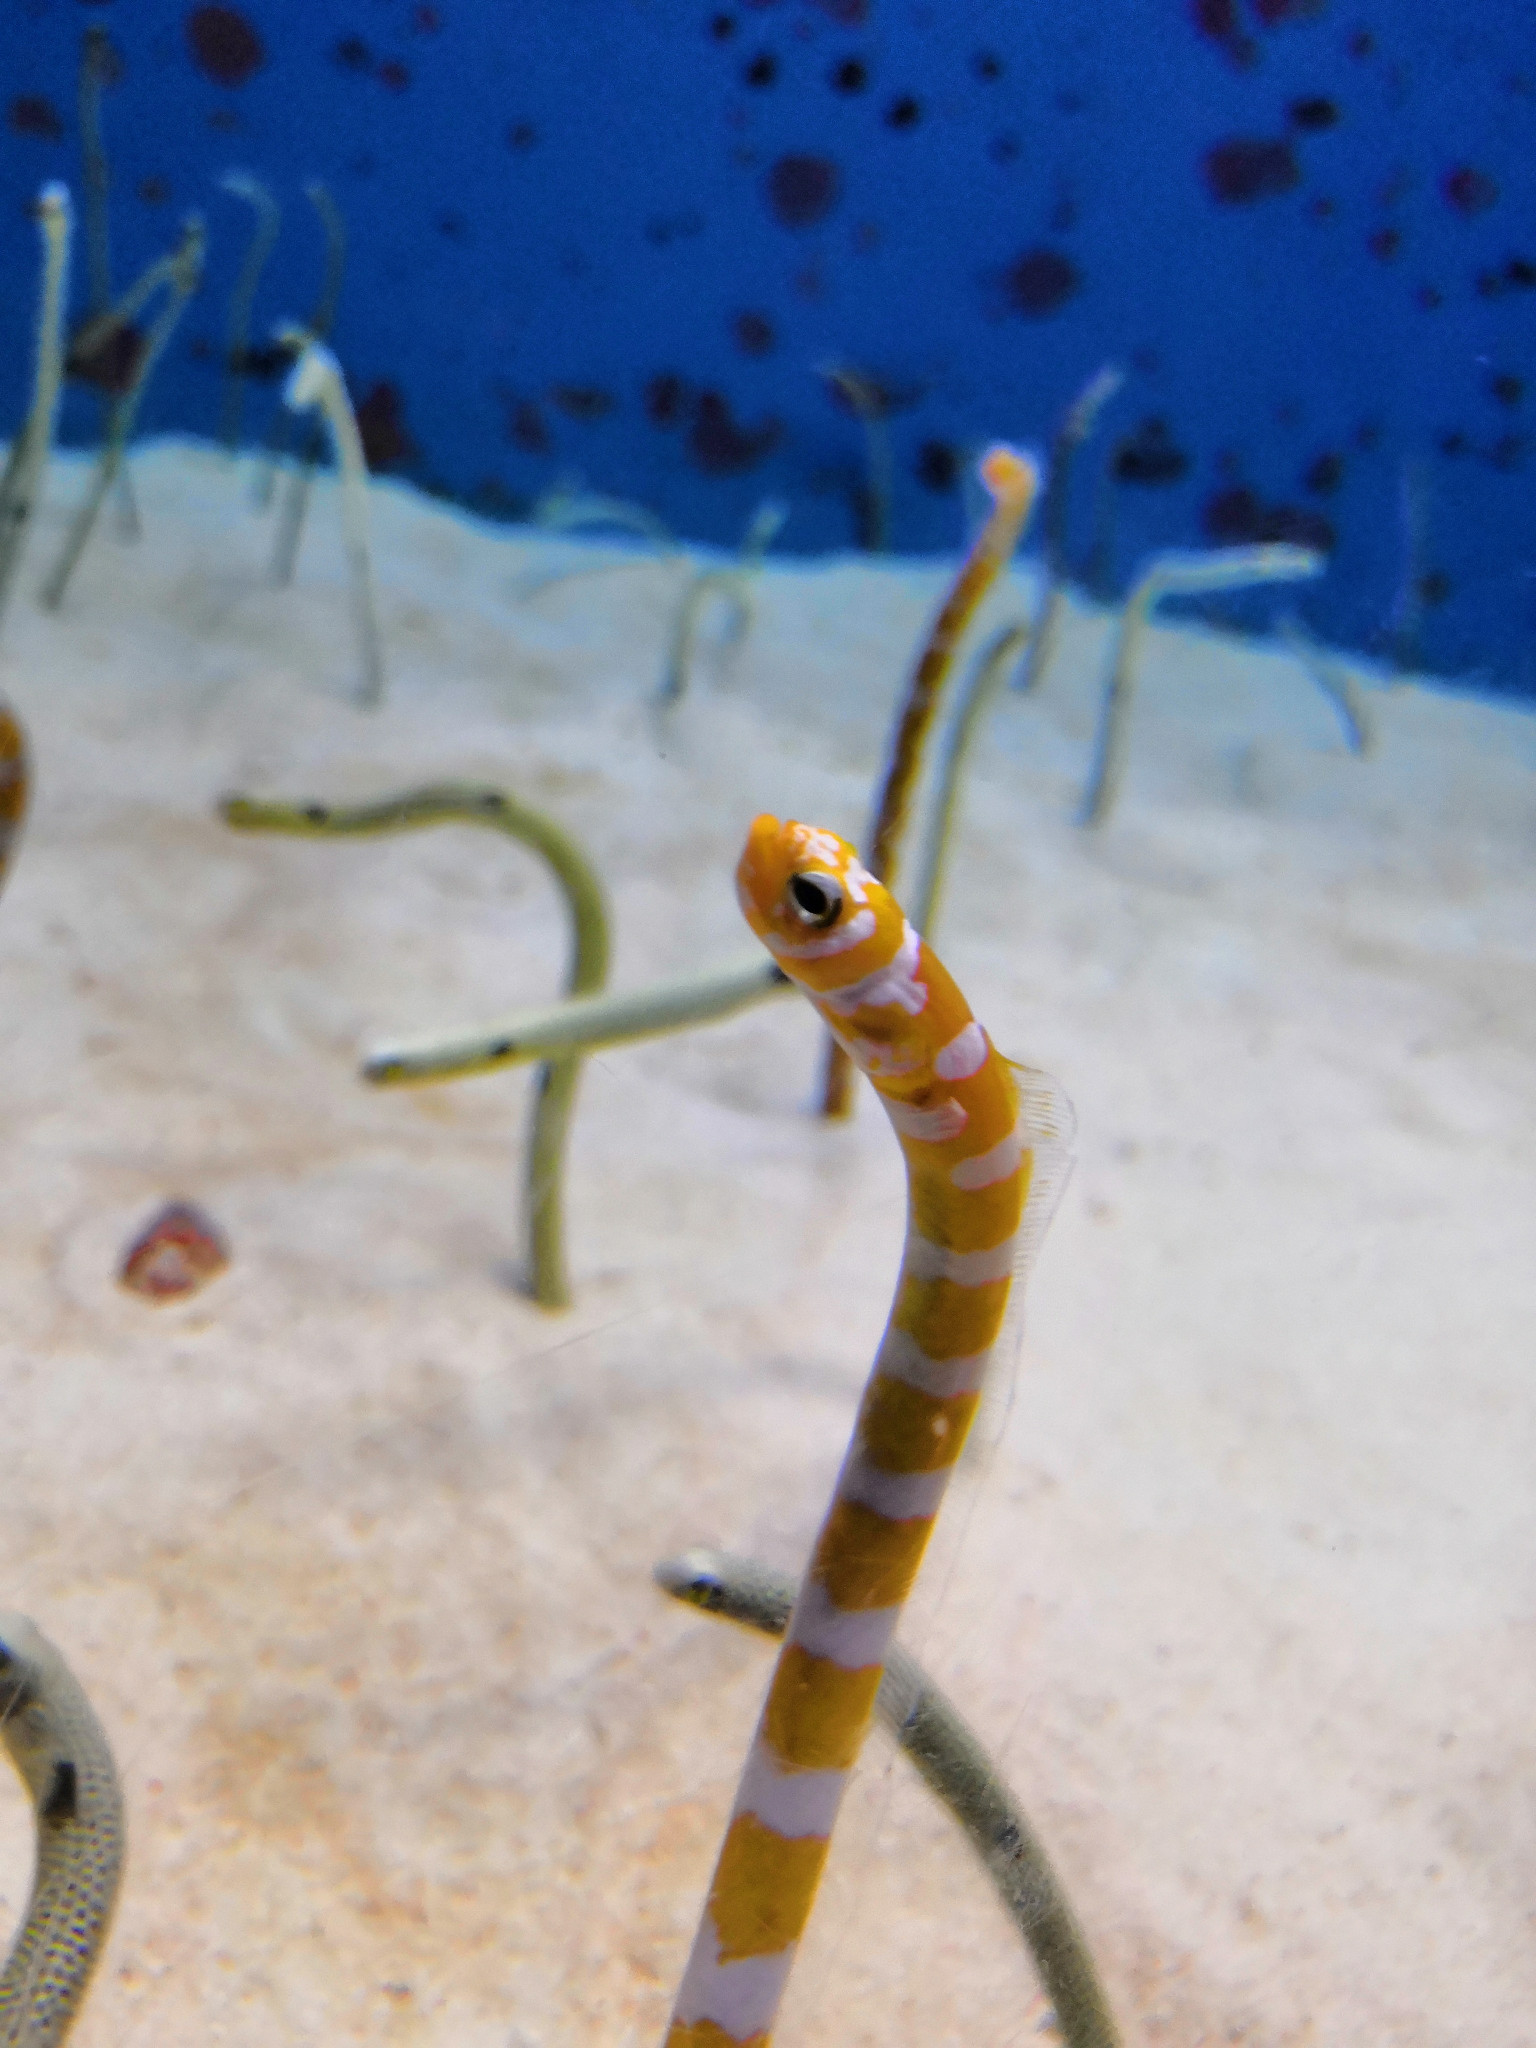 小海蛇(我们自己这样叫它,学名忘了叫啥了,应该是海鳗的一种),此起彼